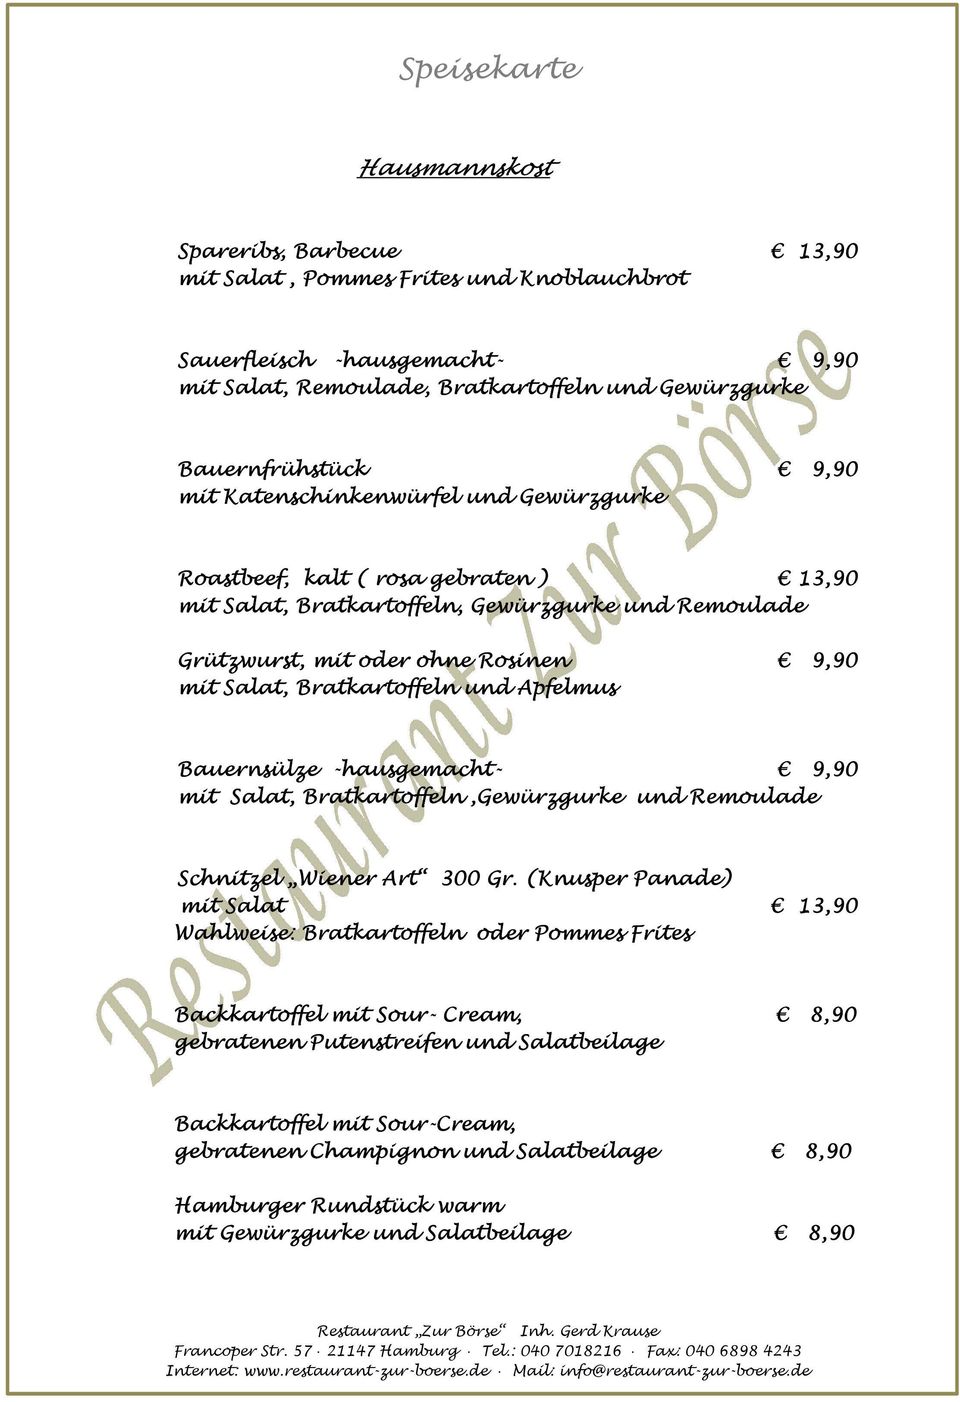 Apfelmus Bauernsülze -hausgemacht- 9,90 mit Salat, Bratkartoffeln,Gewürzgurke und Remoulade Schnitzel Wiener Art 300 Gr.